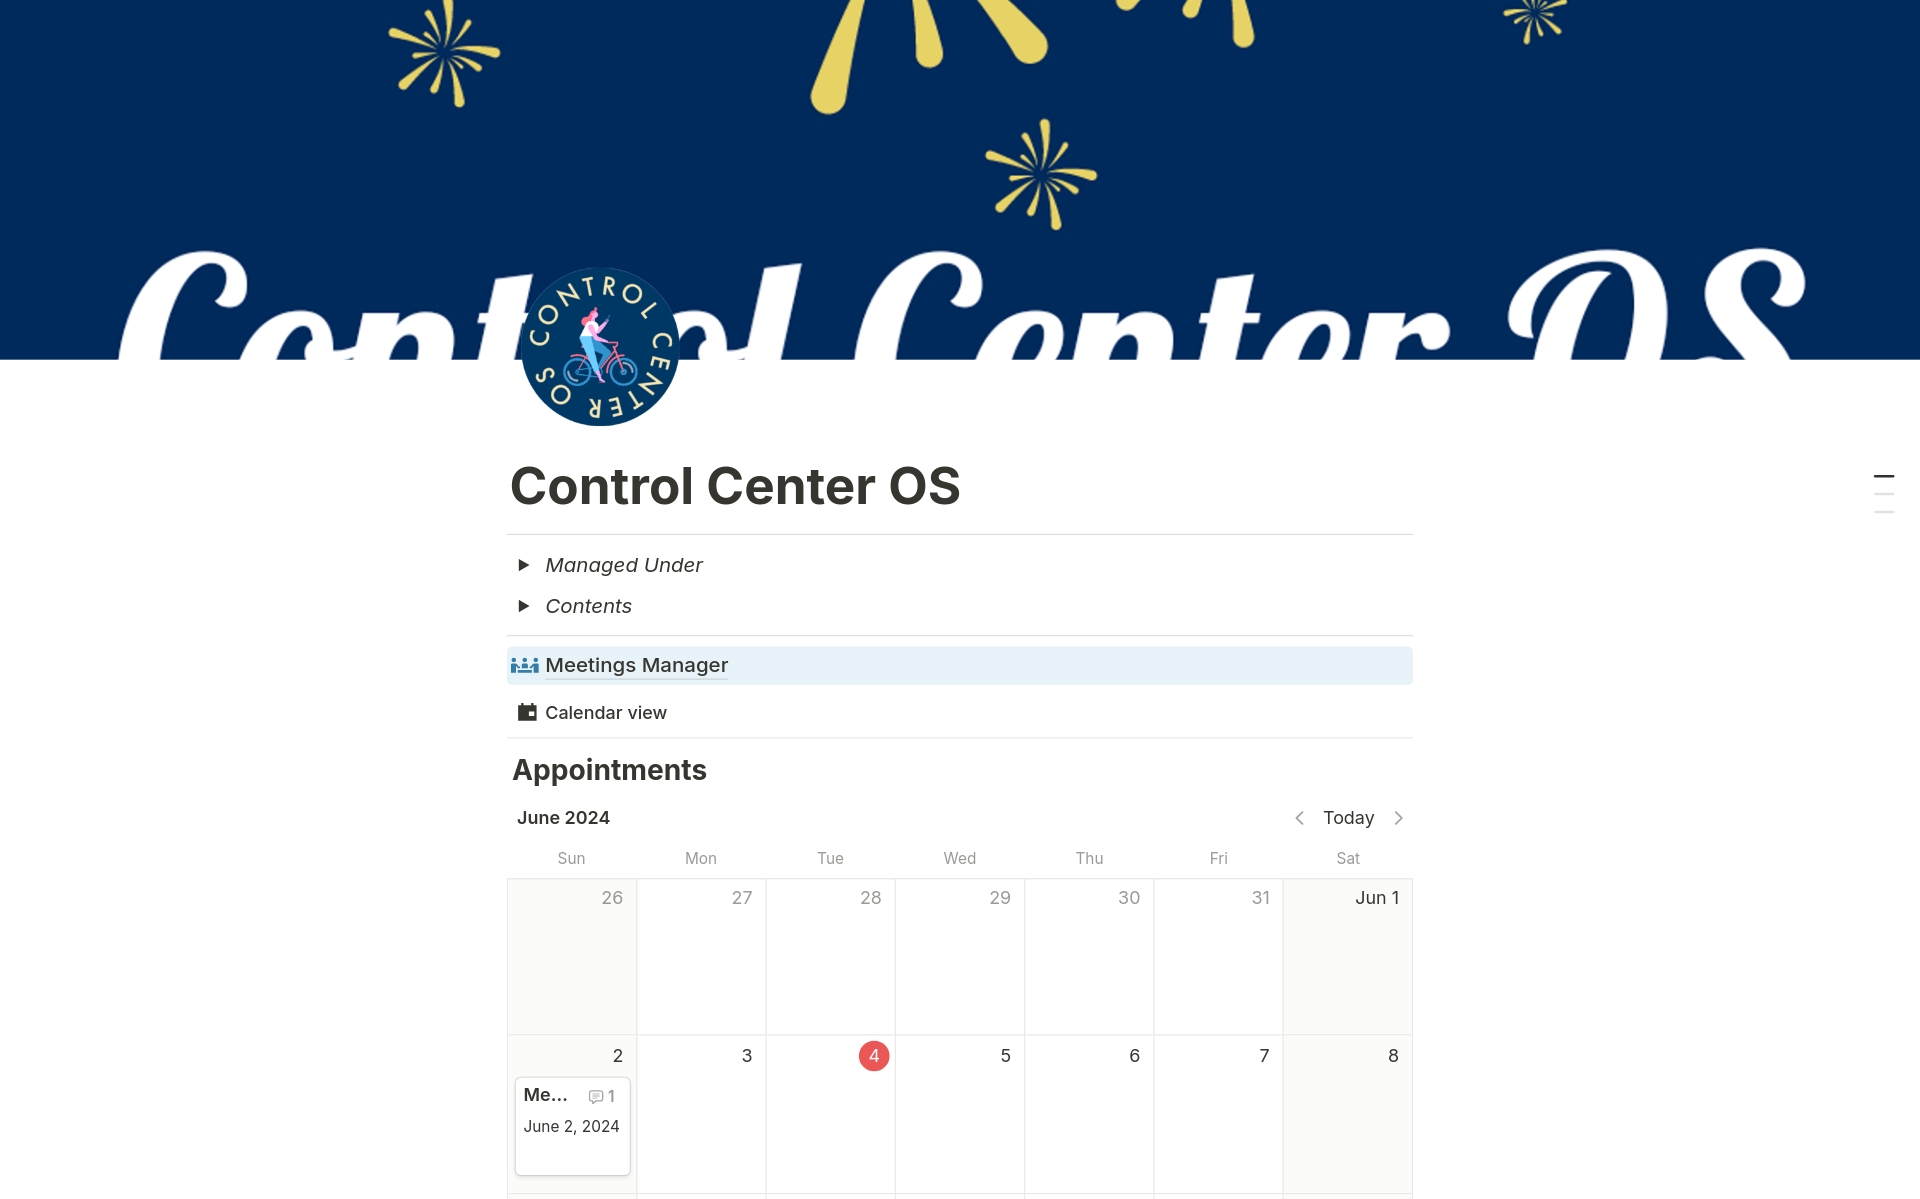 Vista previa de plantilla para Control Center OS 